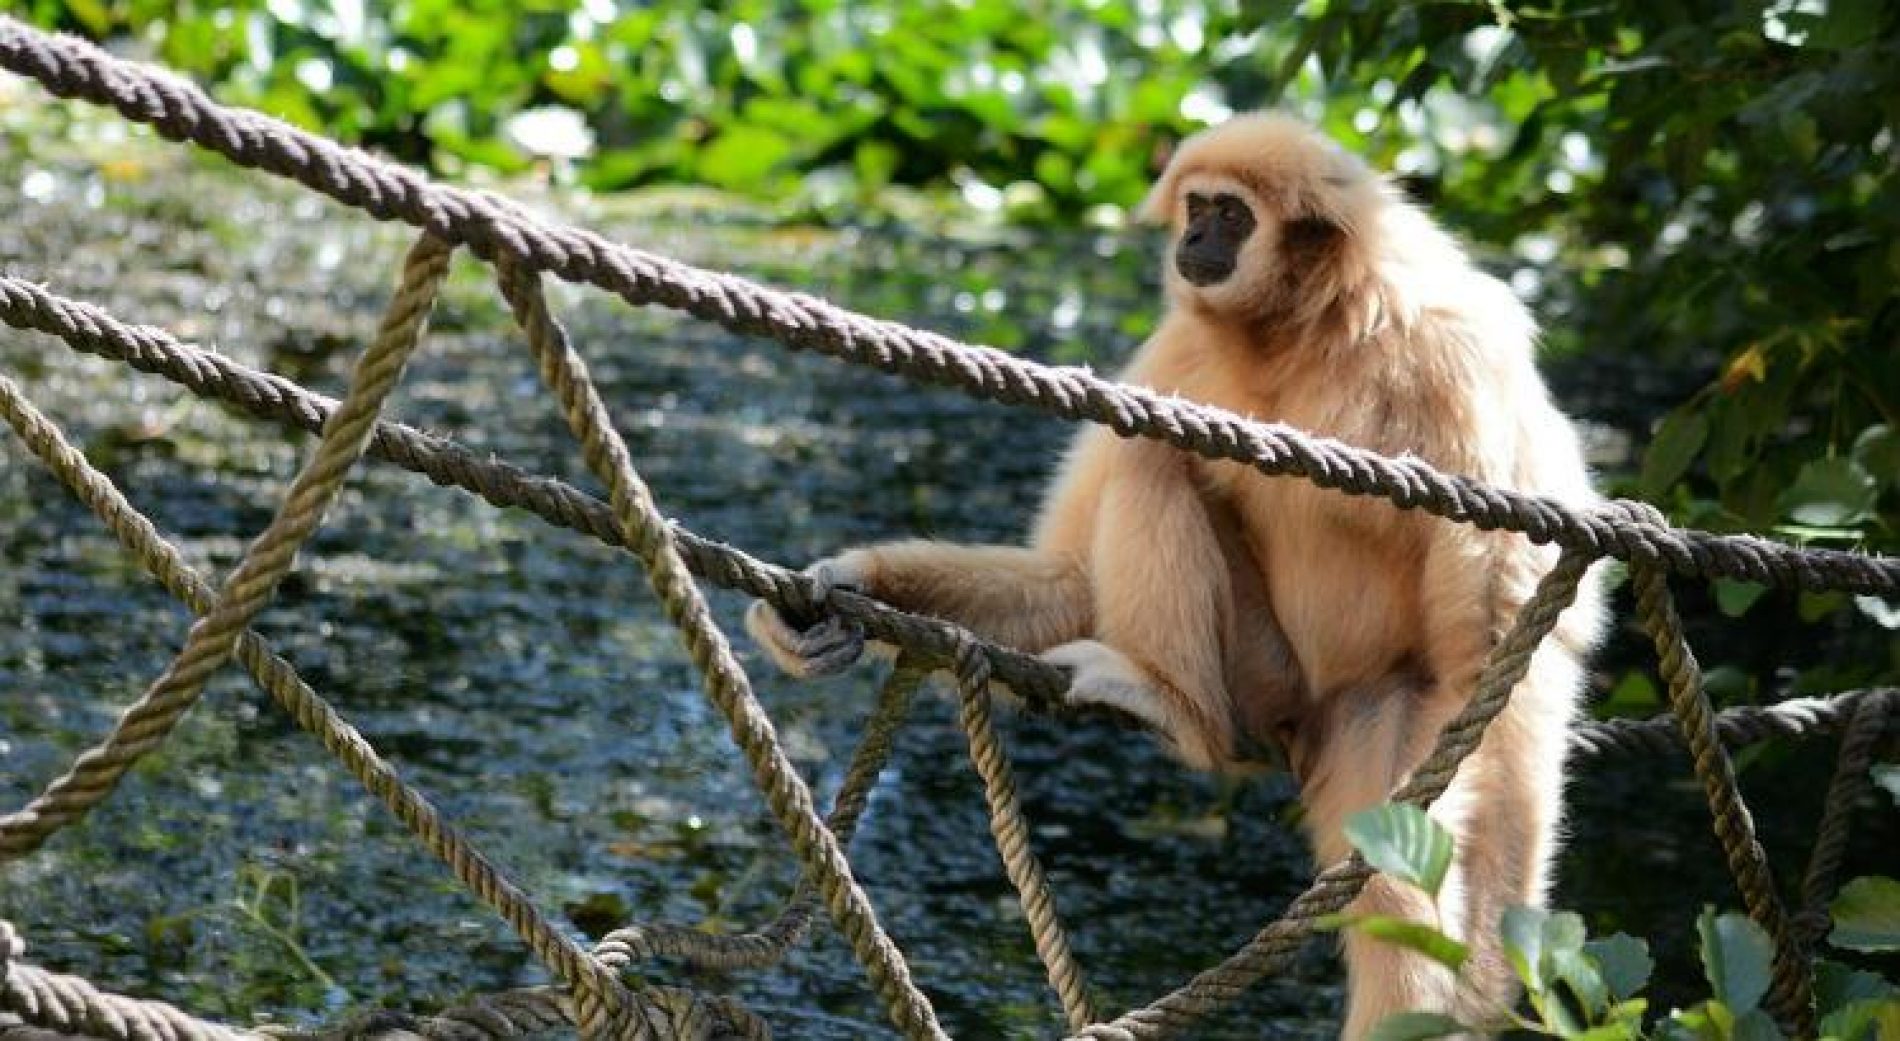 SÃO PAULO: Parques e zoológicos fecham após morte de macaco com febre amarela